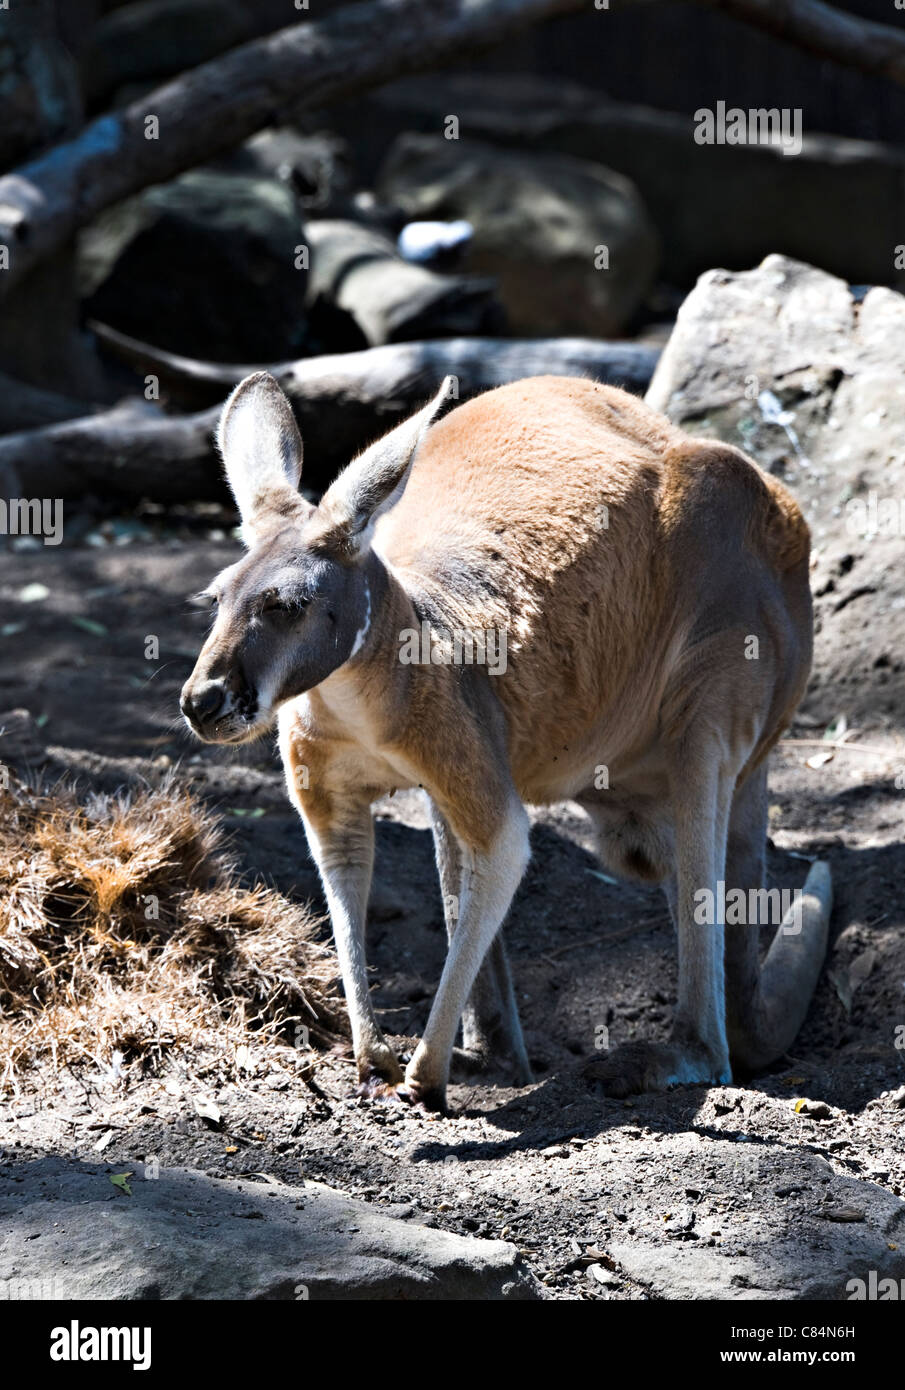 Un kangourou rouge dans le Zoo Taronga Sydney New South Wales Australie Banque D'Images